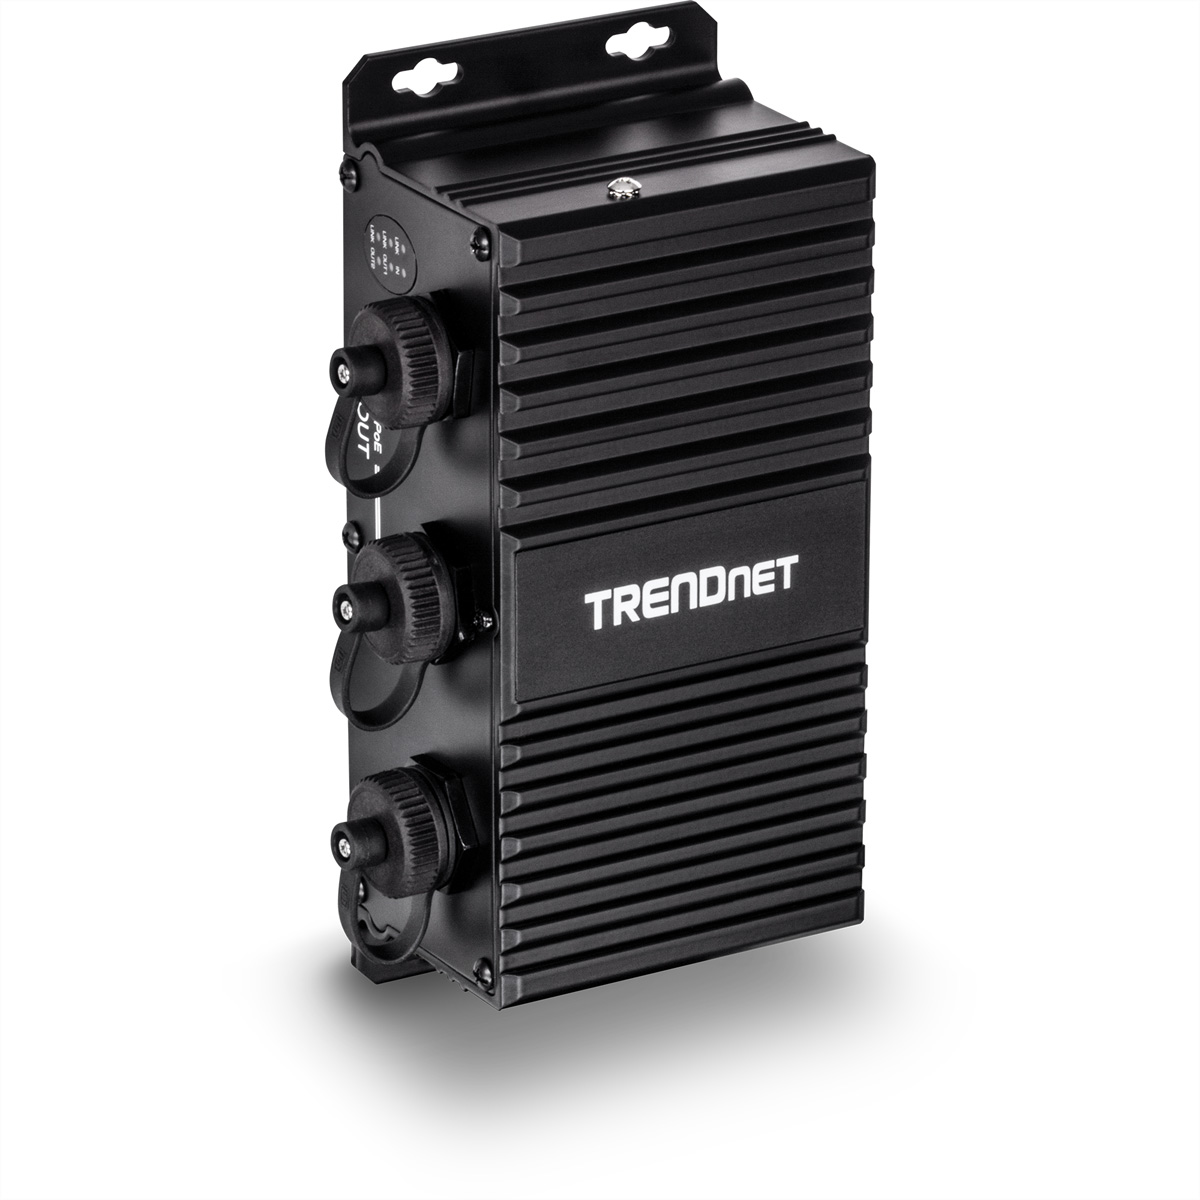 TRENDNET TI-EU120 2-Port UPoE Extender Injektor Gigabit Gigabit Outdoor PoE Industrial